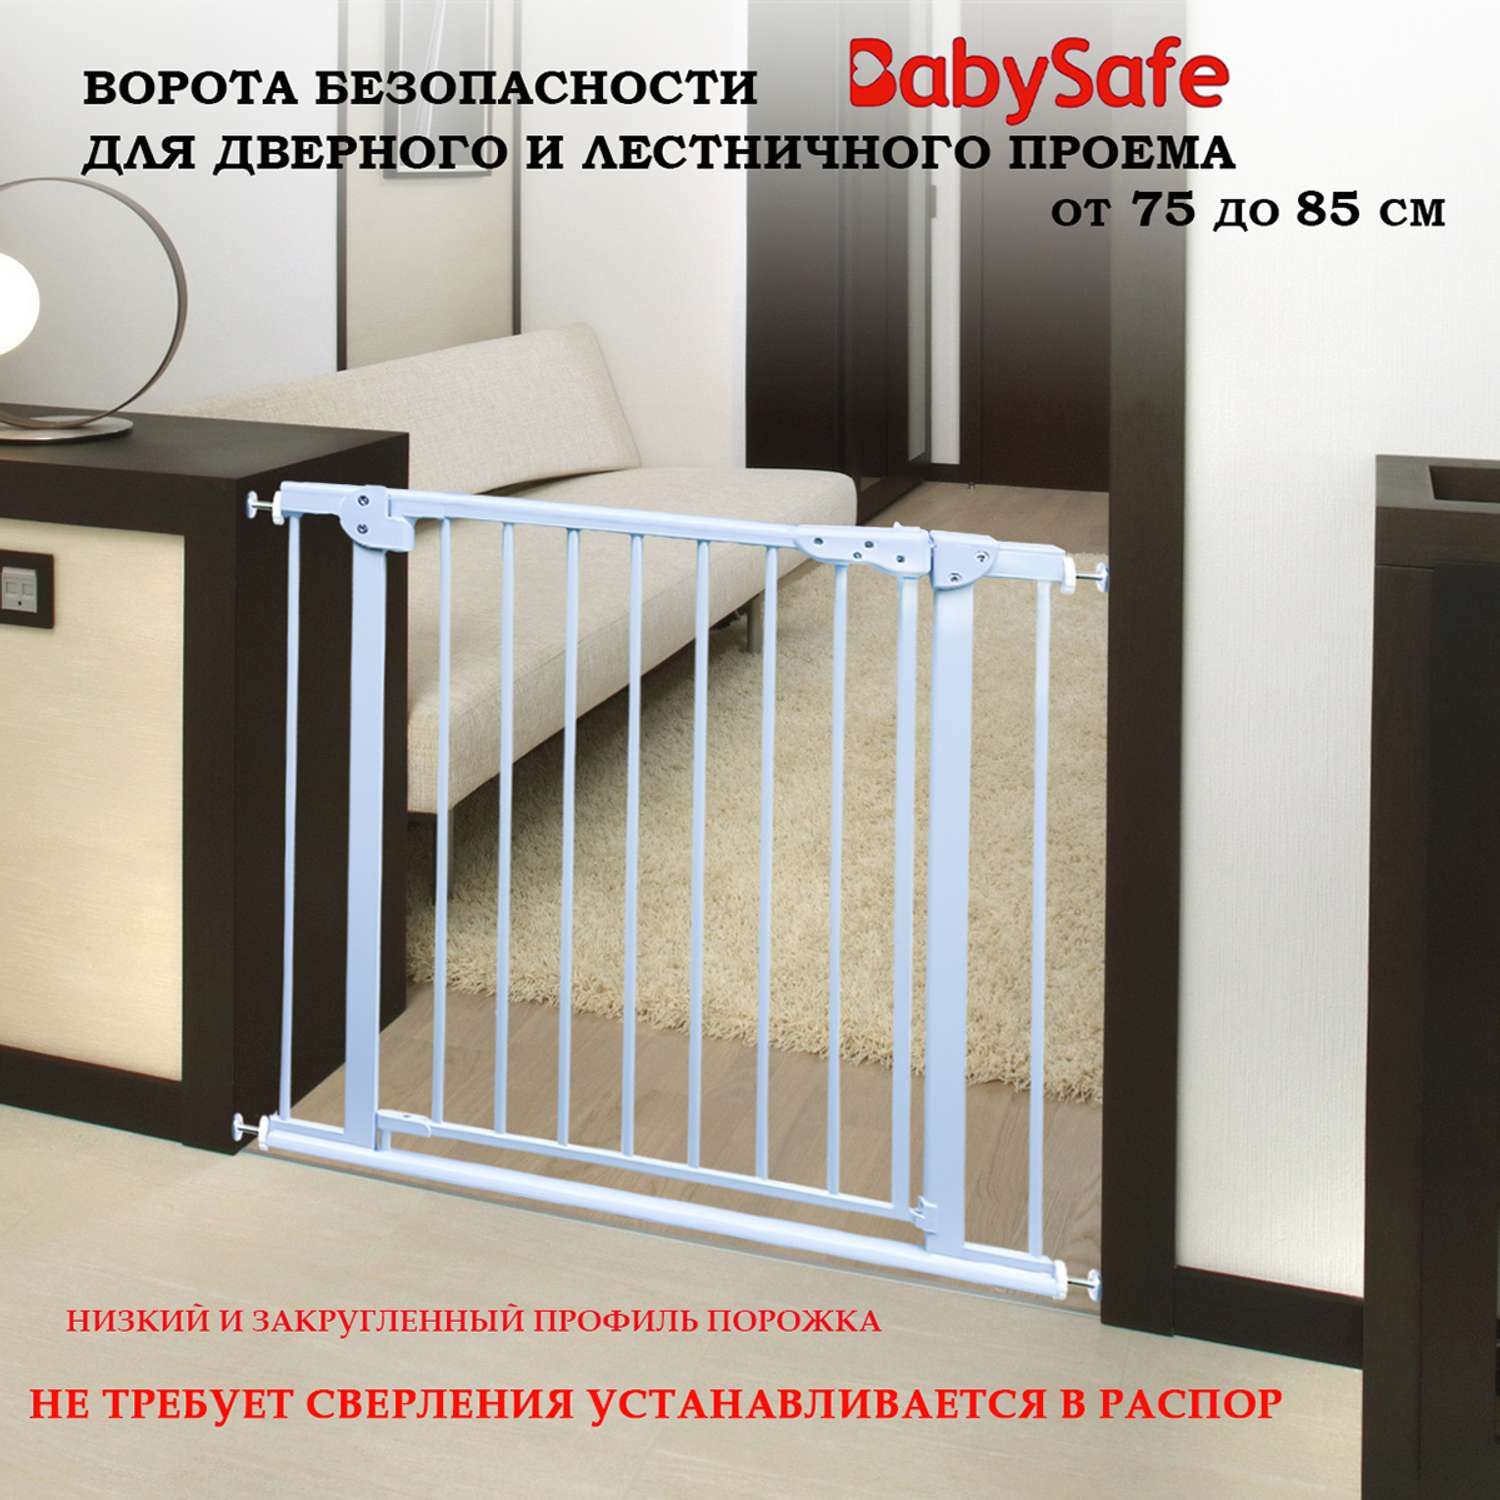 Барьер-калитка в дверной проем Baby Safe 75-85 cm XY-783 - фото 1